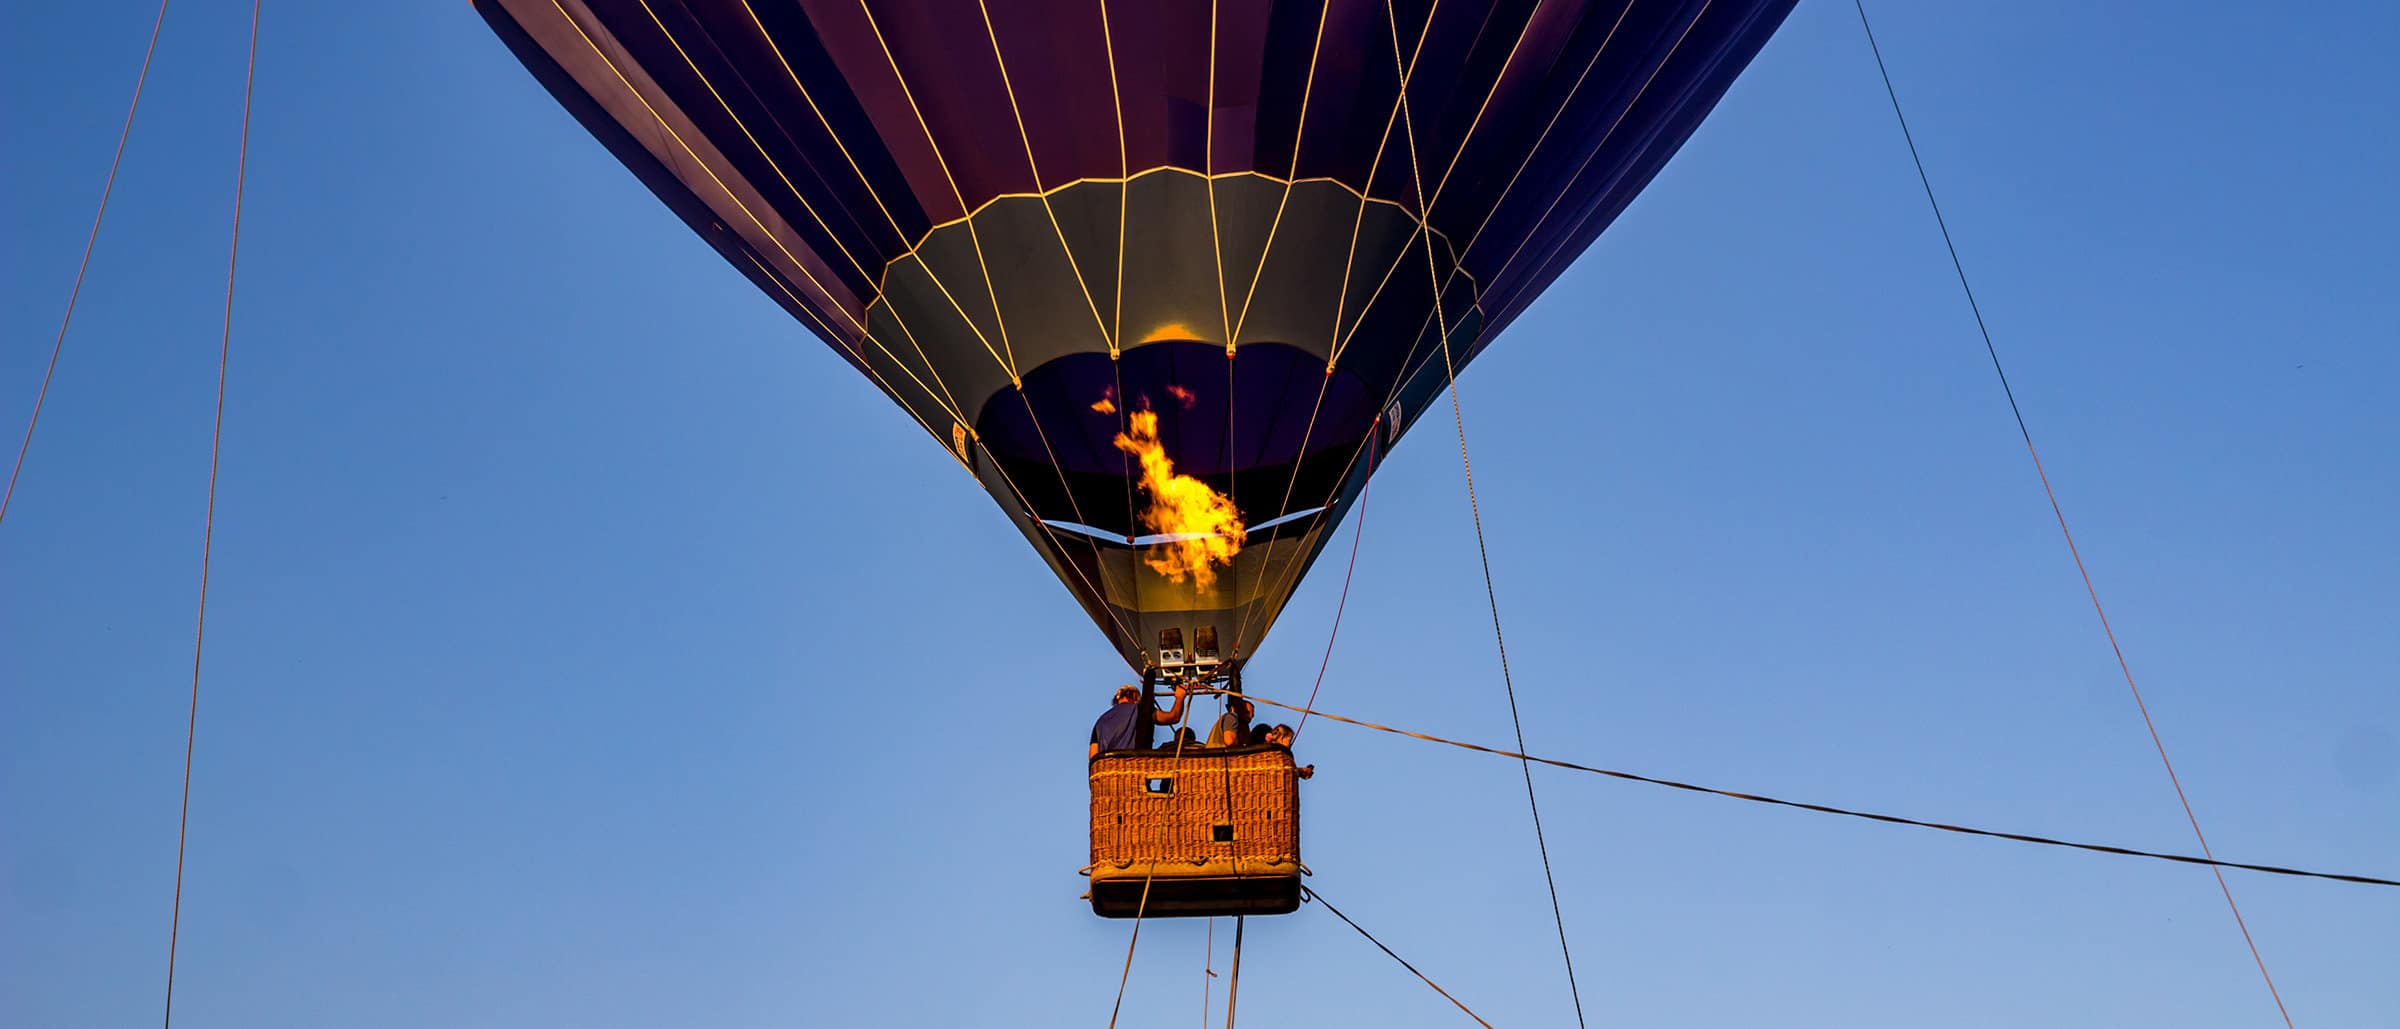 Tethered balloon flights hot air balloon and group activities at Pinehurst Resort